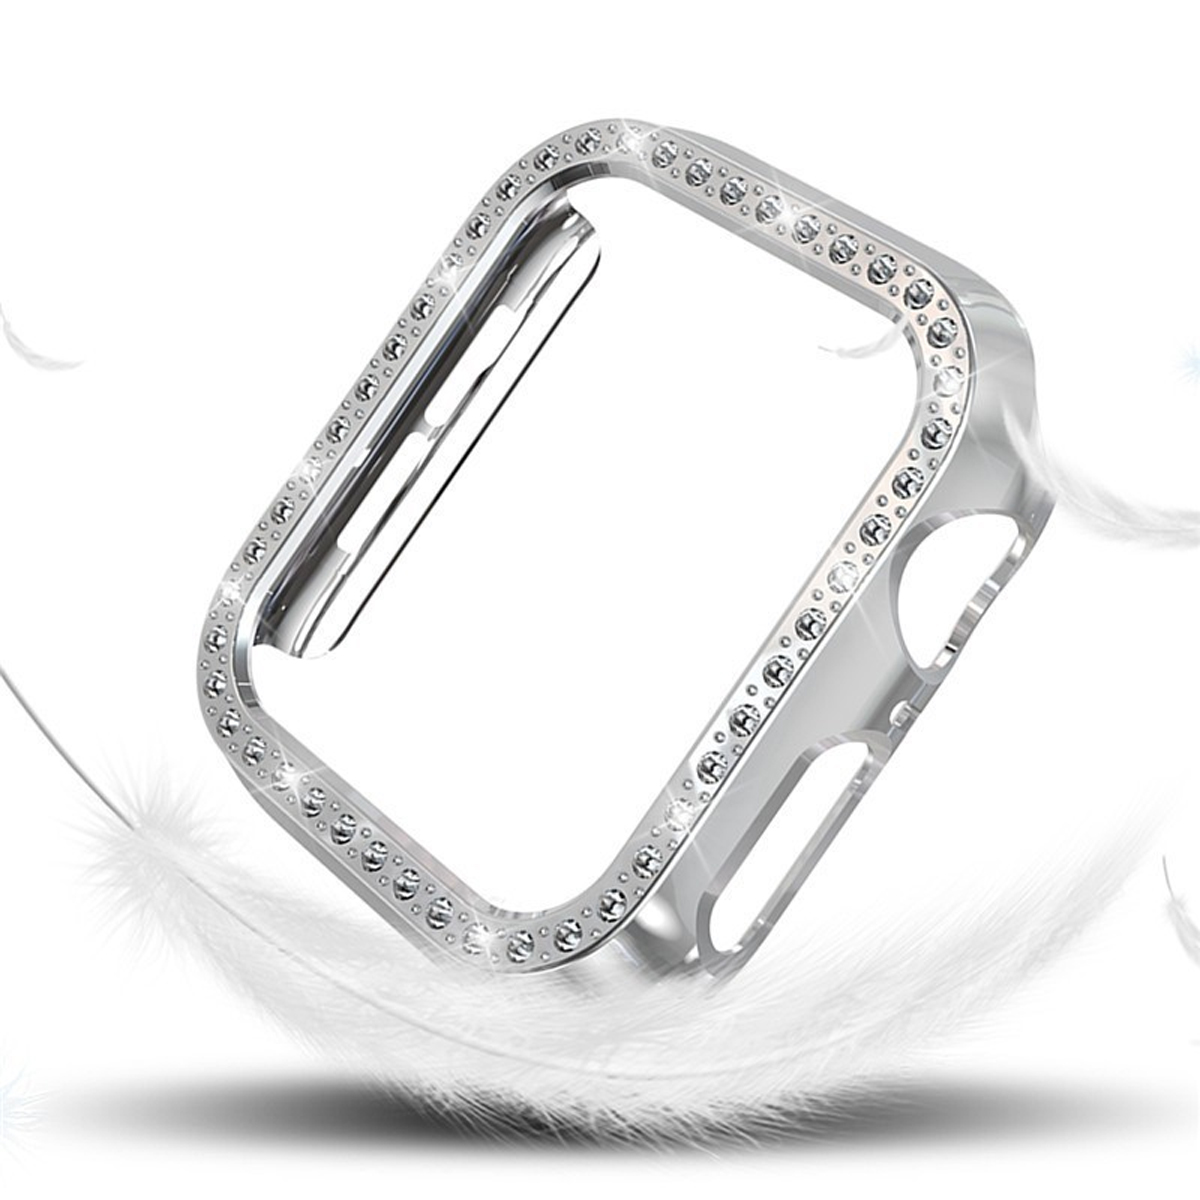 DIIDA Smartwatch-Schutzhülle, kratzfest, geschützt, Apple Watch 45mm, Apple, Schutzfolie, vollständig für 45mm, Silber 1-7